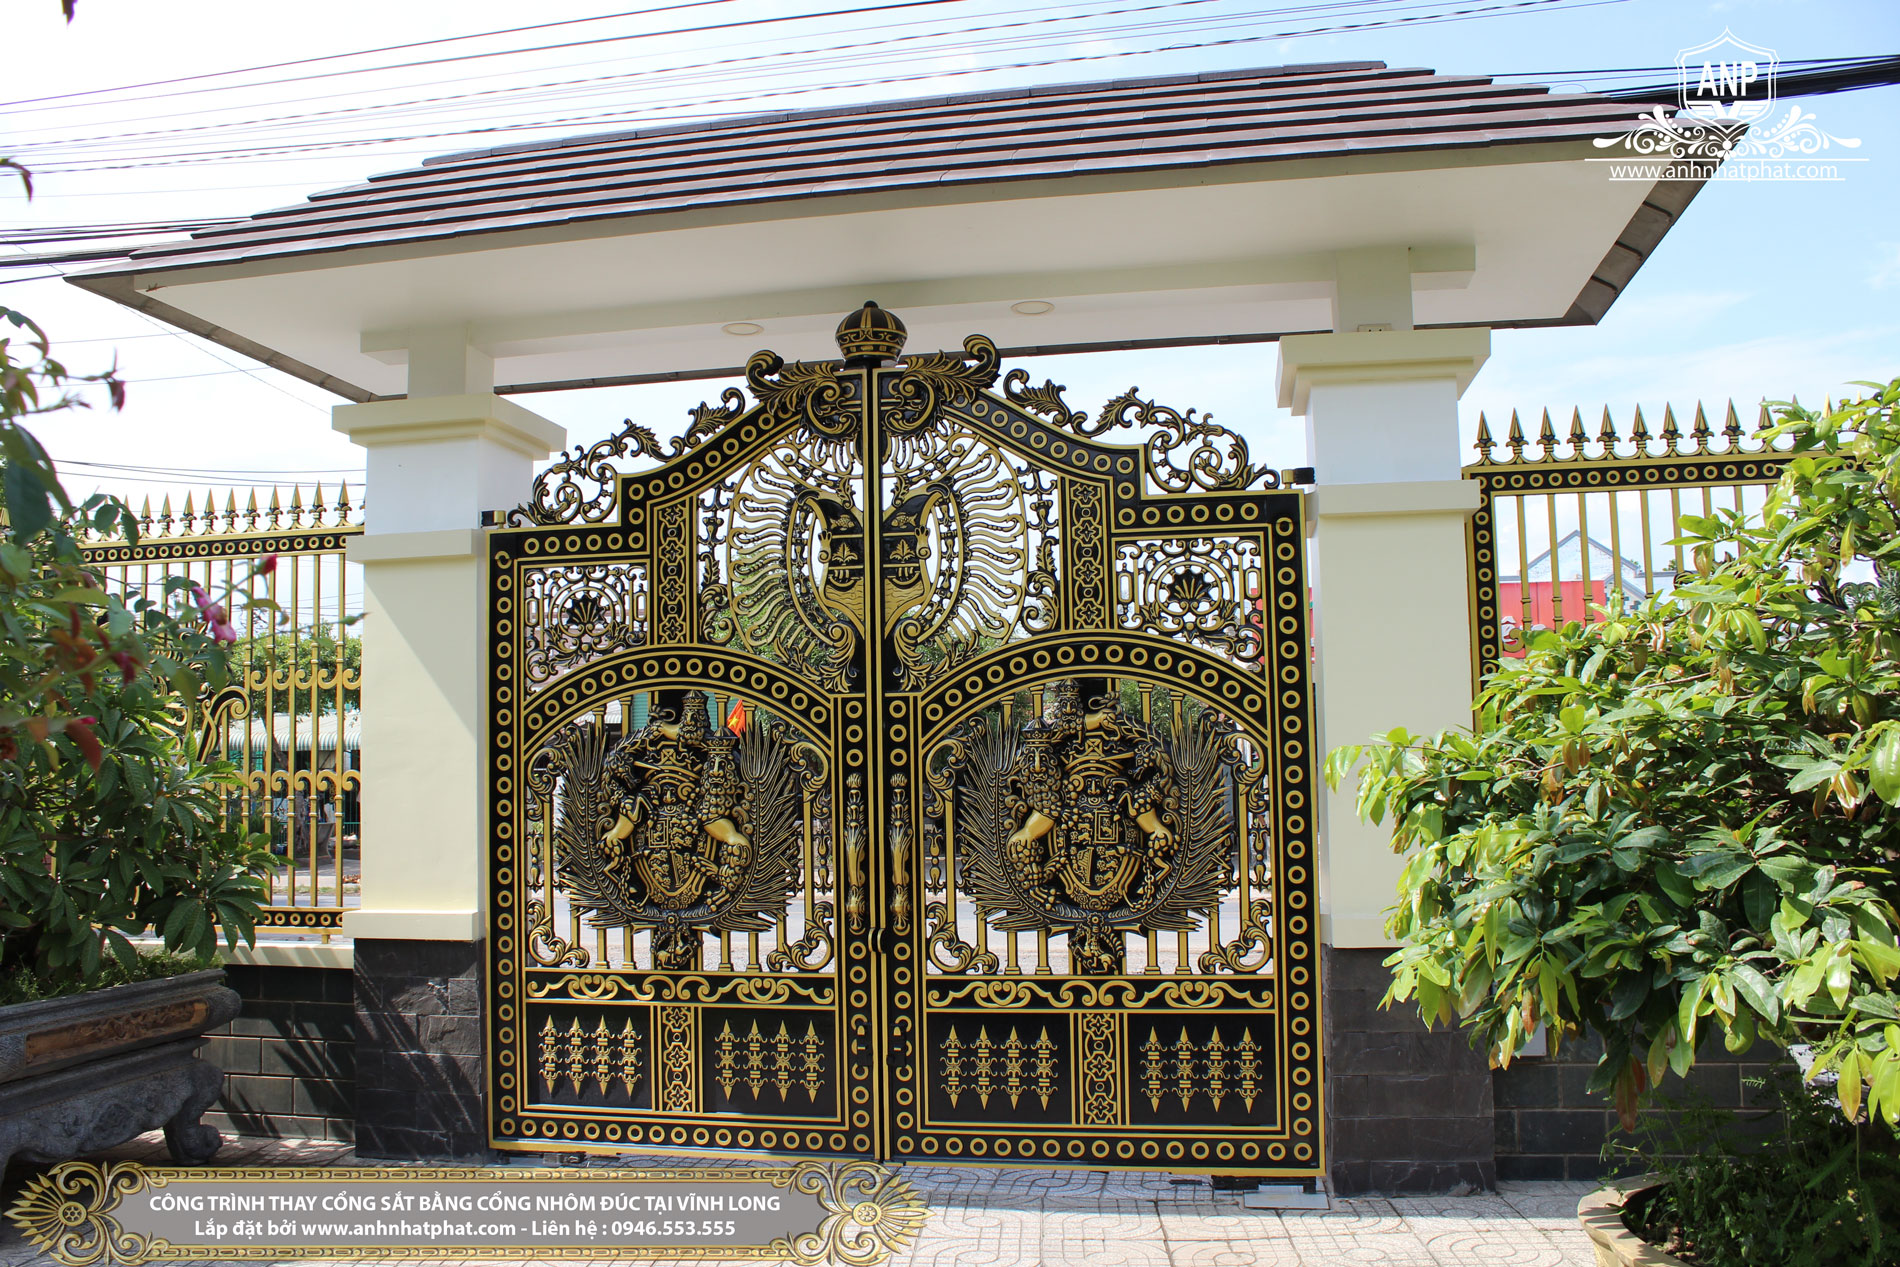 Tổng hợp hơn 100 ảnh về mẫu cổng biệt thự nhà vườn  daotaonec